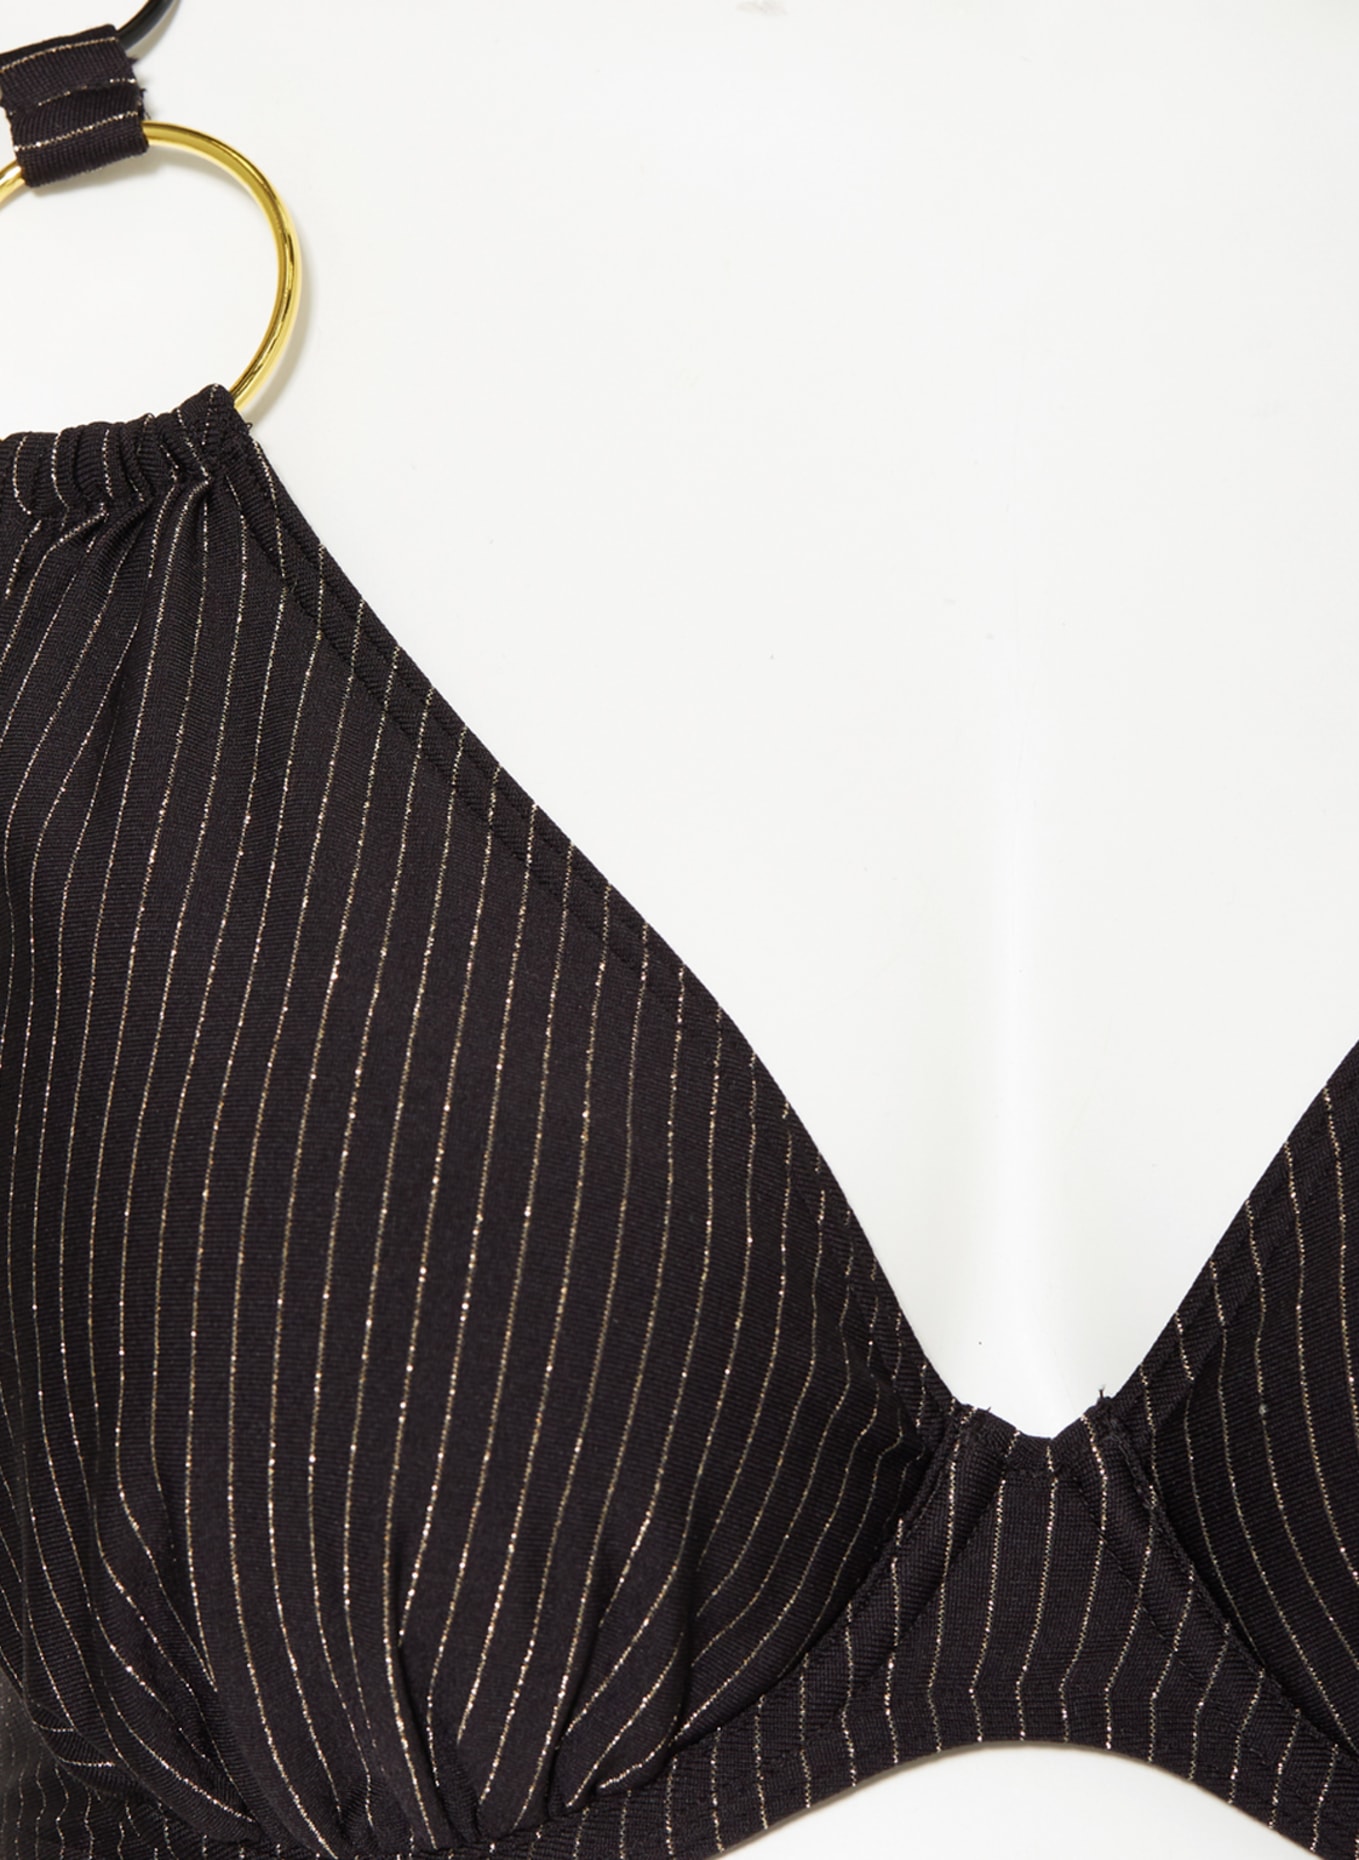 PrimaDonna Underwired bikini top SOLTA with glitter thread, Color: BLACK (Image 7)